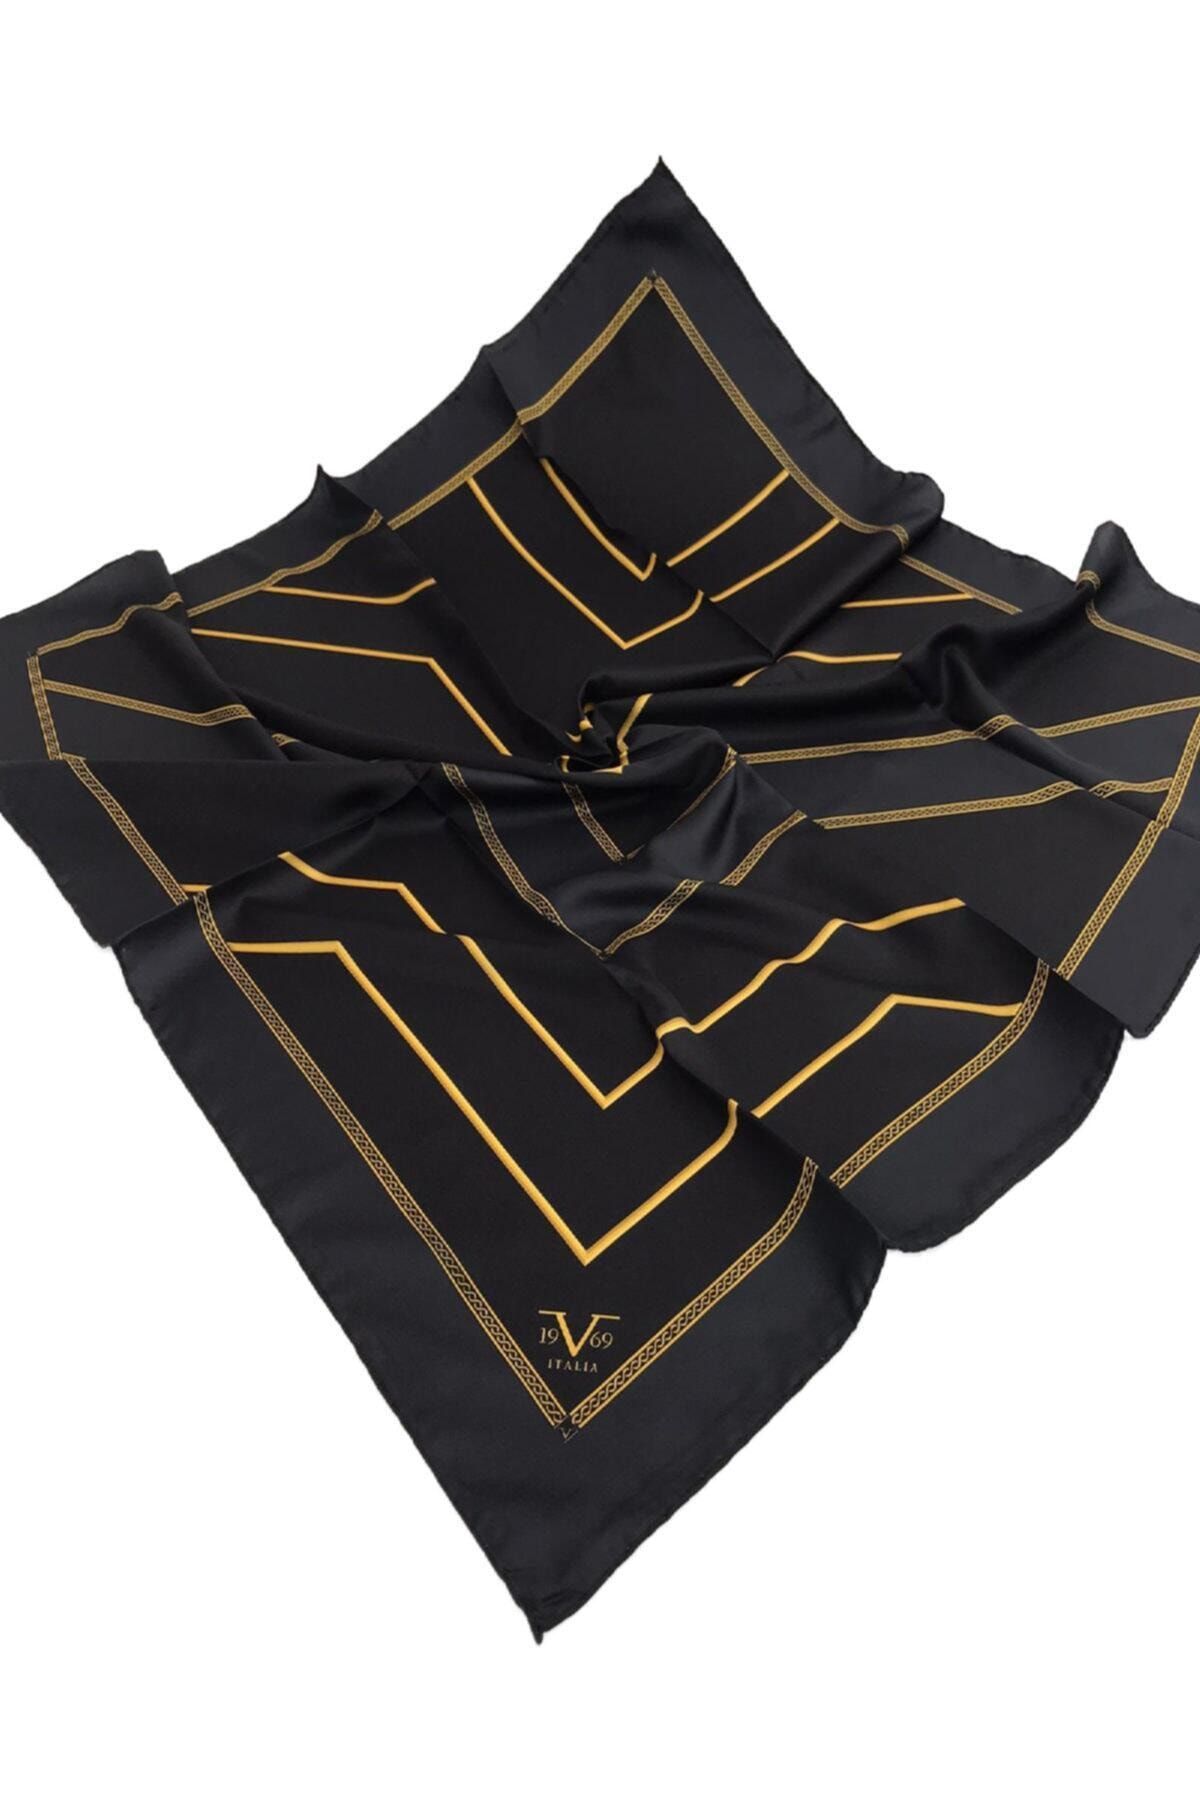 19V69 ITALIA Siyah Gold Twill Eşarp Geometrik Desen Black Seri Eşarp Askısı Ile Birlikte 90x90 Cm